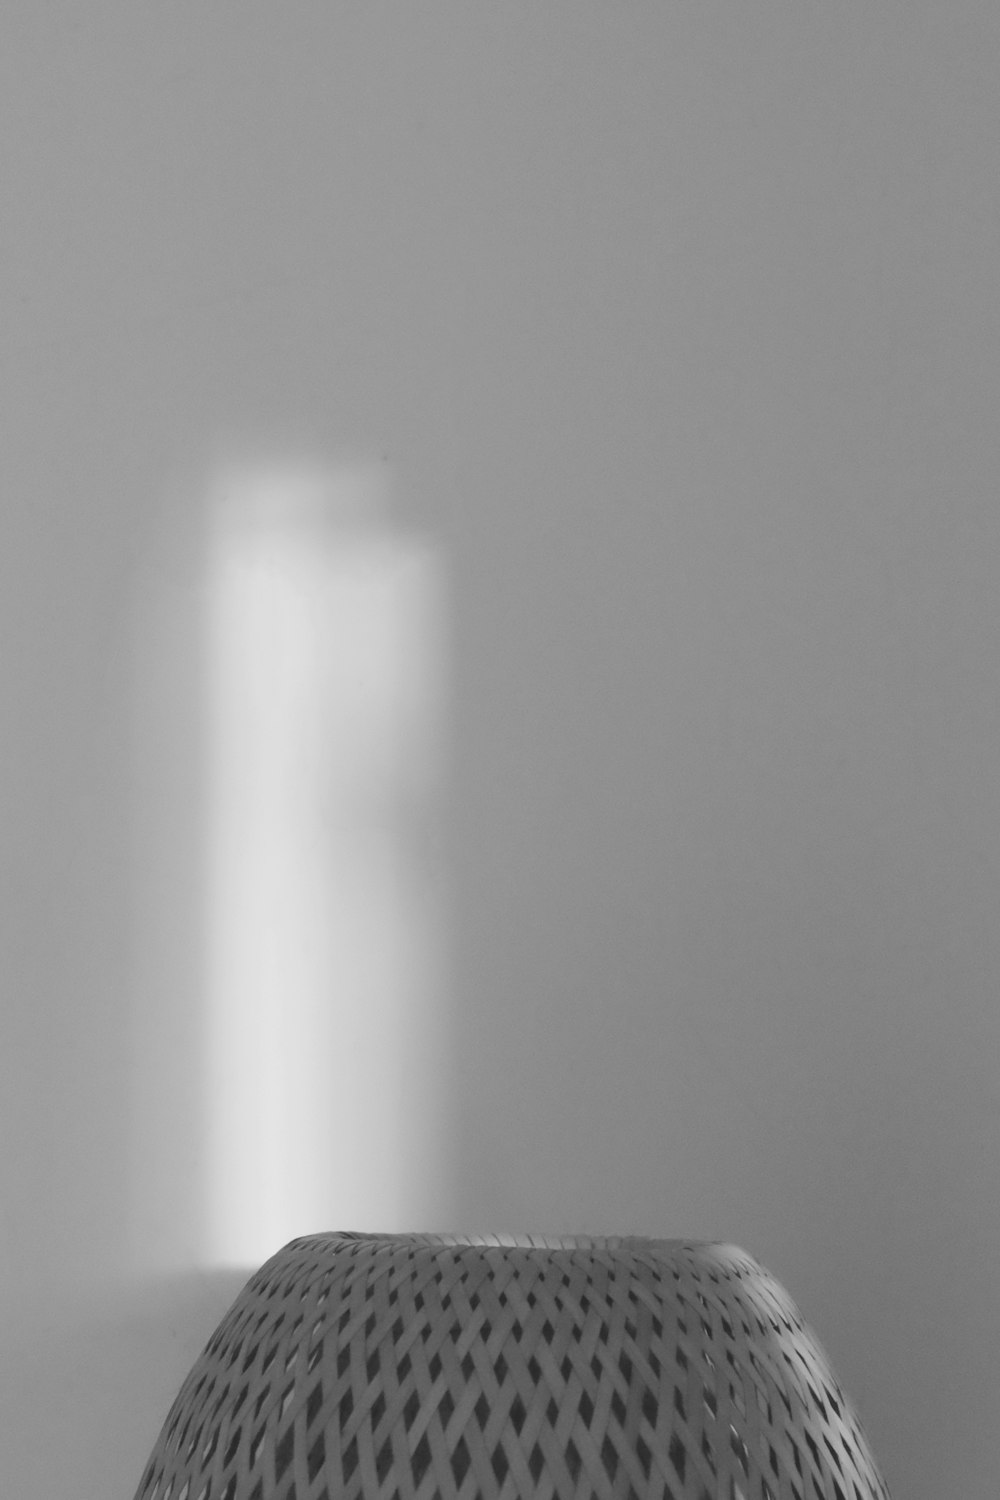 uma foto em preto e branco de uma luz entrando através de uma janela